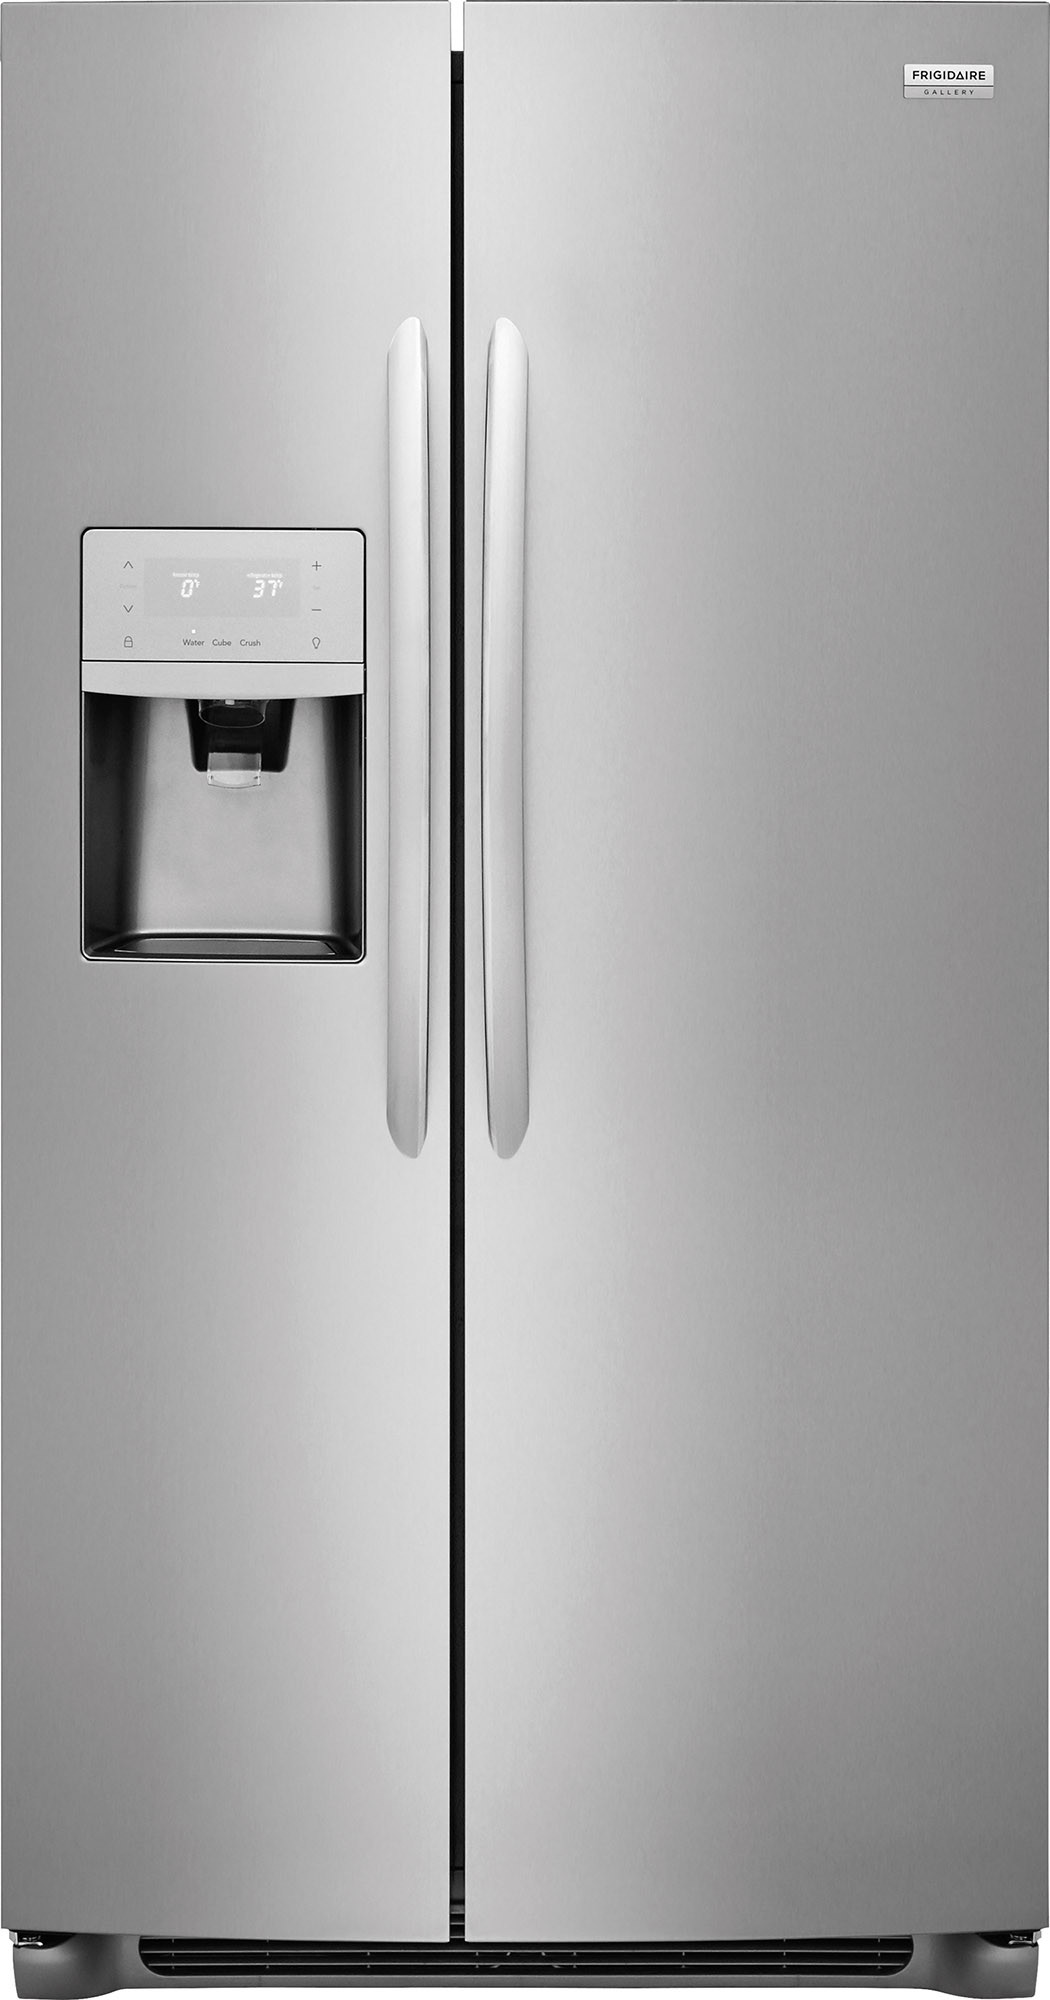 Frigidaire side by side refrigerator warm